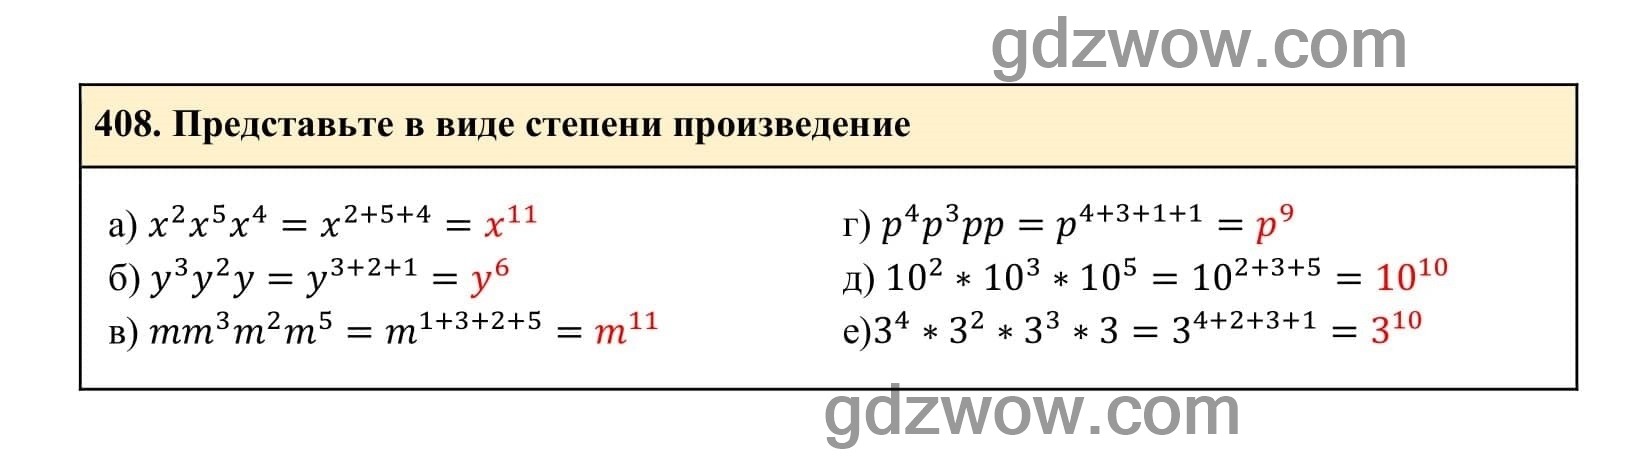 Упражнение 408 - ГДЗ по Алгебре 7 класс Учебник Макарычев (решебник) - GDZwow